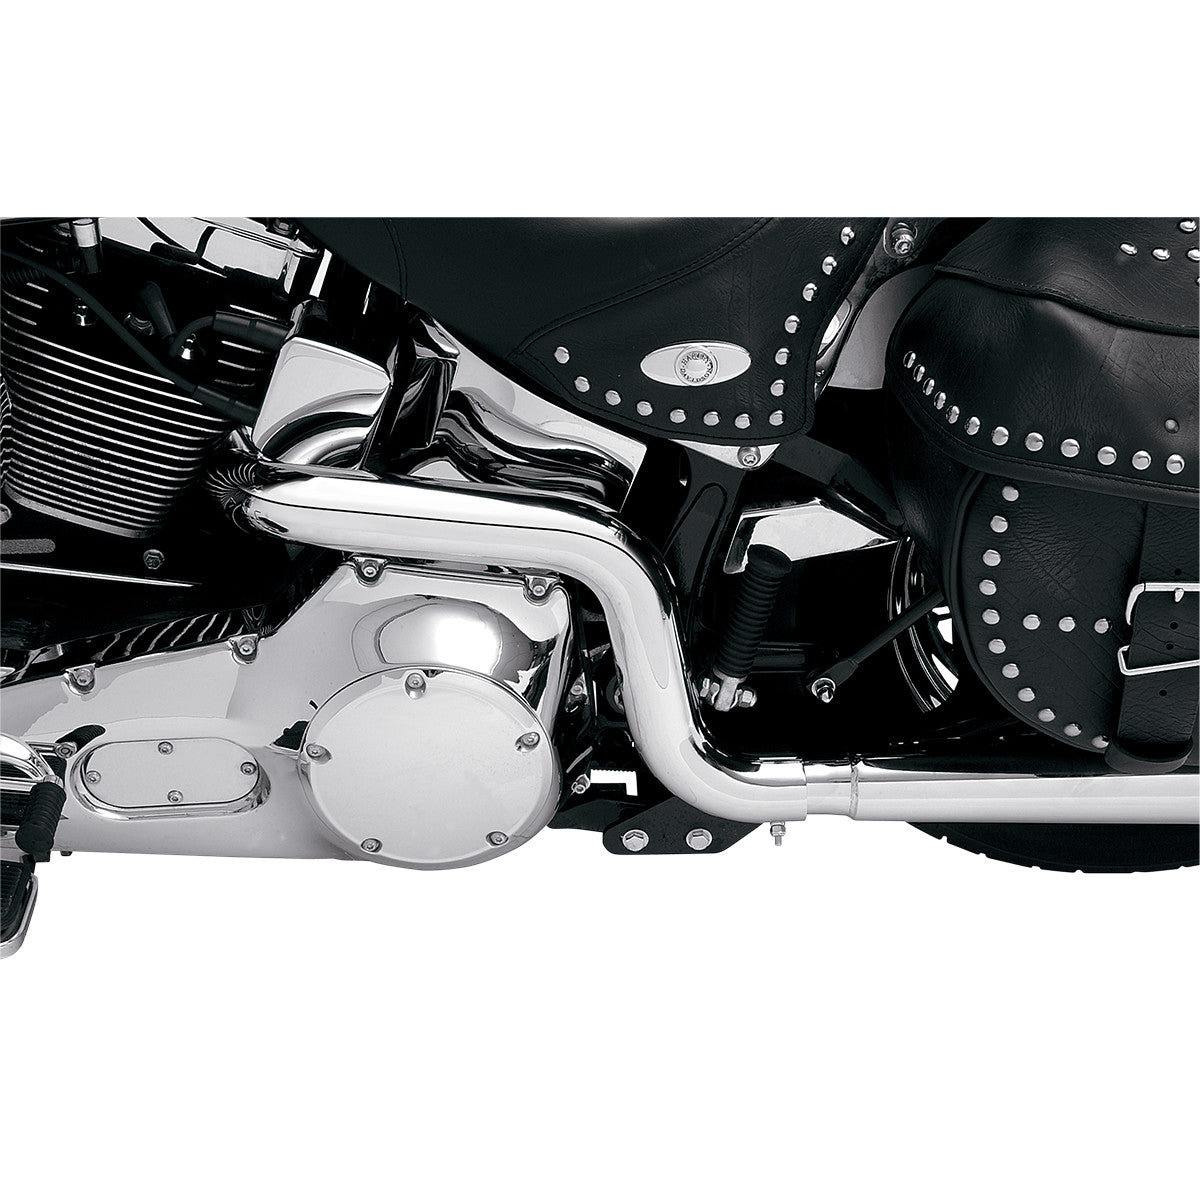 Bassani Power Curve True-Dual Crossover Header-Rohre für Harley-Davidson Softail